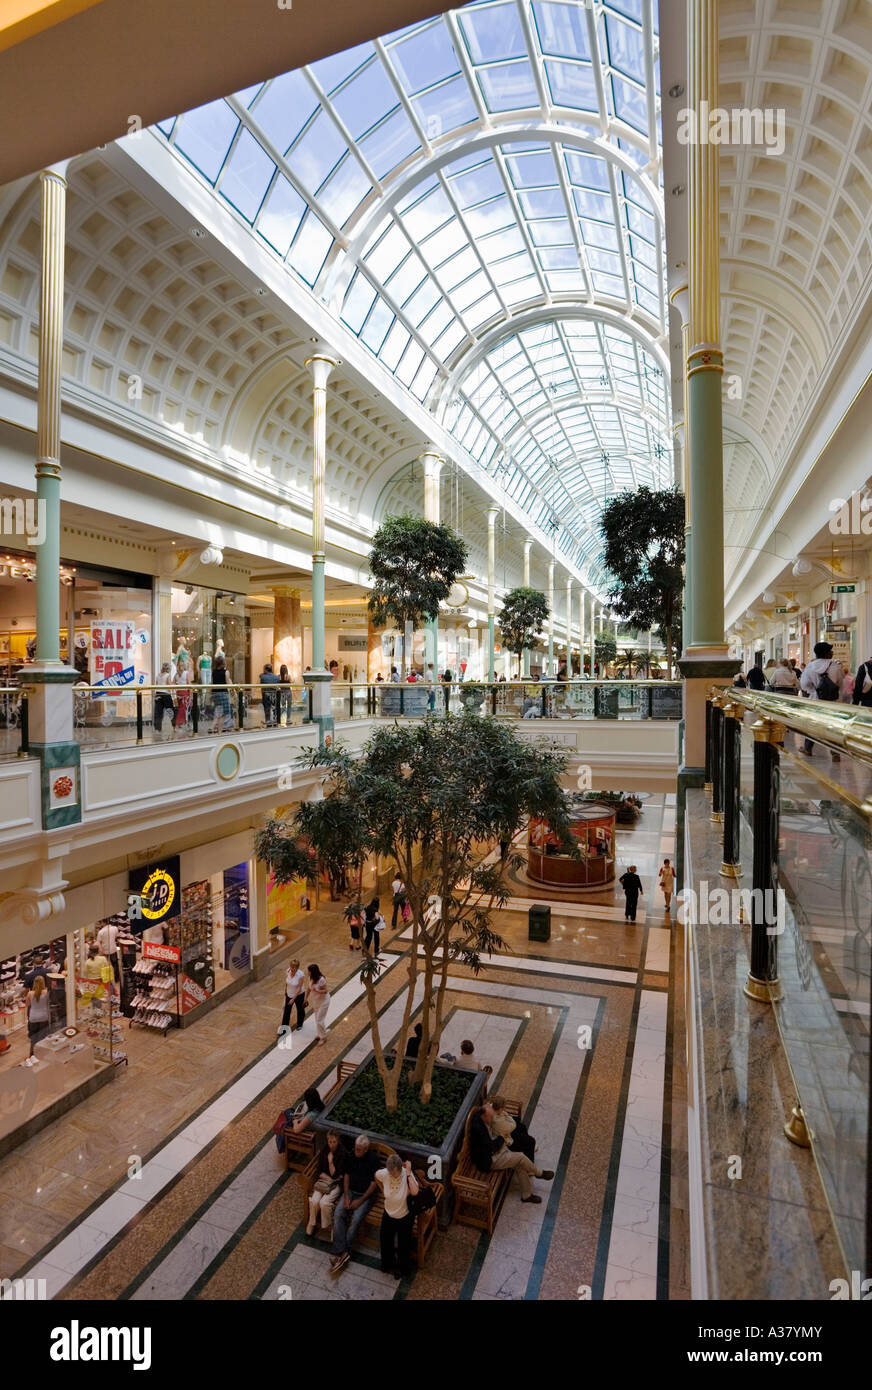 Innenraum des Trafford Centre Shopping Mall, Manchester zeigt Geschäfte auf zwei Ebenen Stockfoto